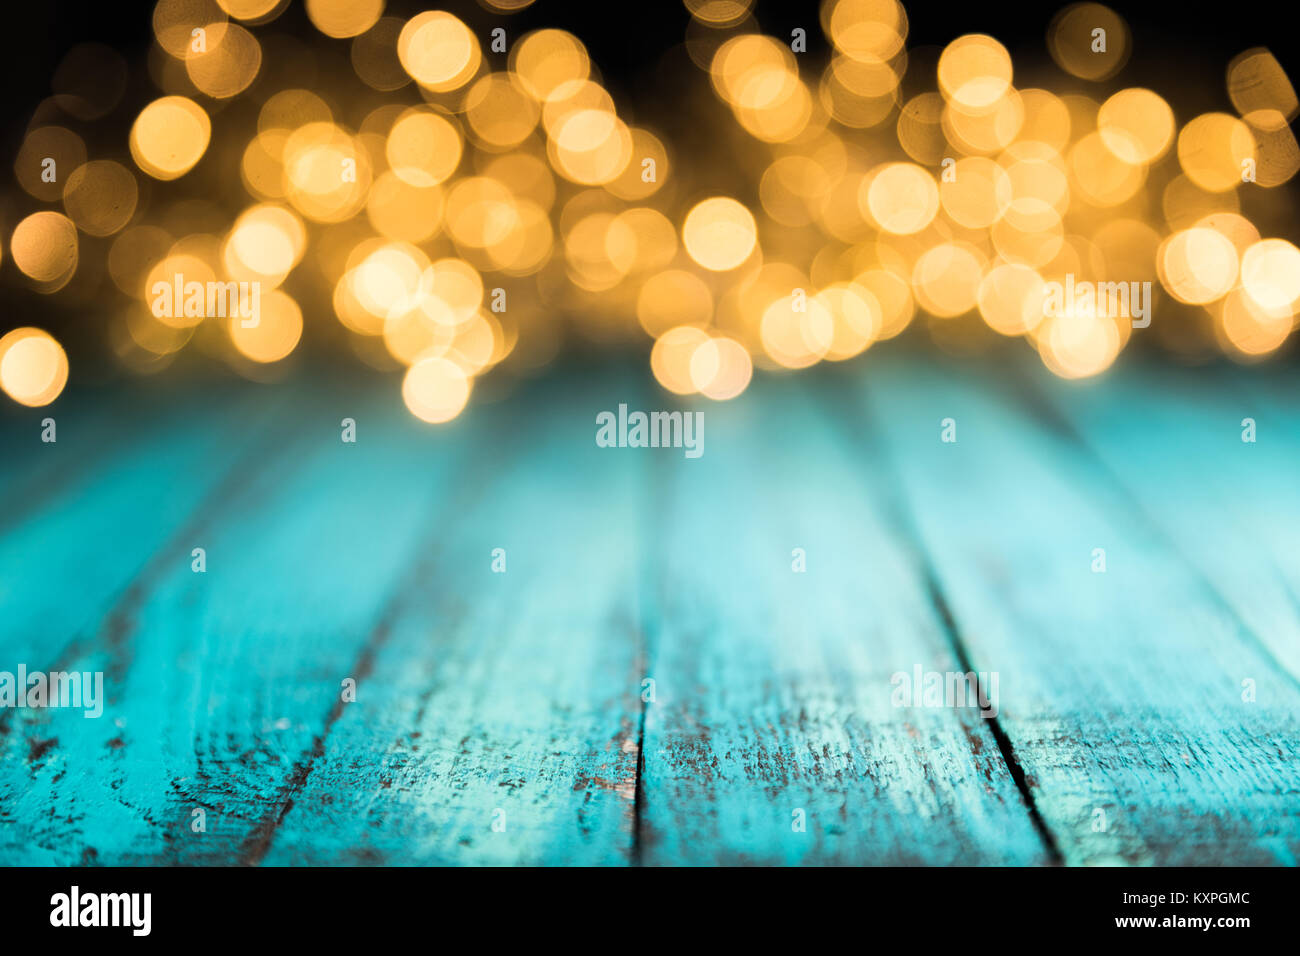 Festliche bokeh leuchtet blau auf Holz- Oberfläche, Weihnachten Hintergrund Stockfoto